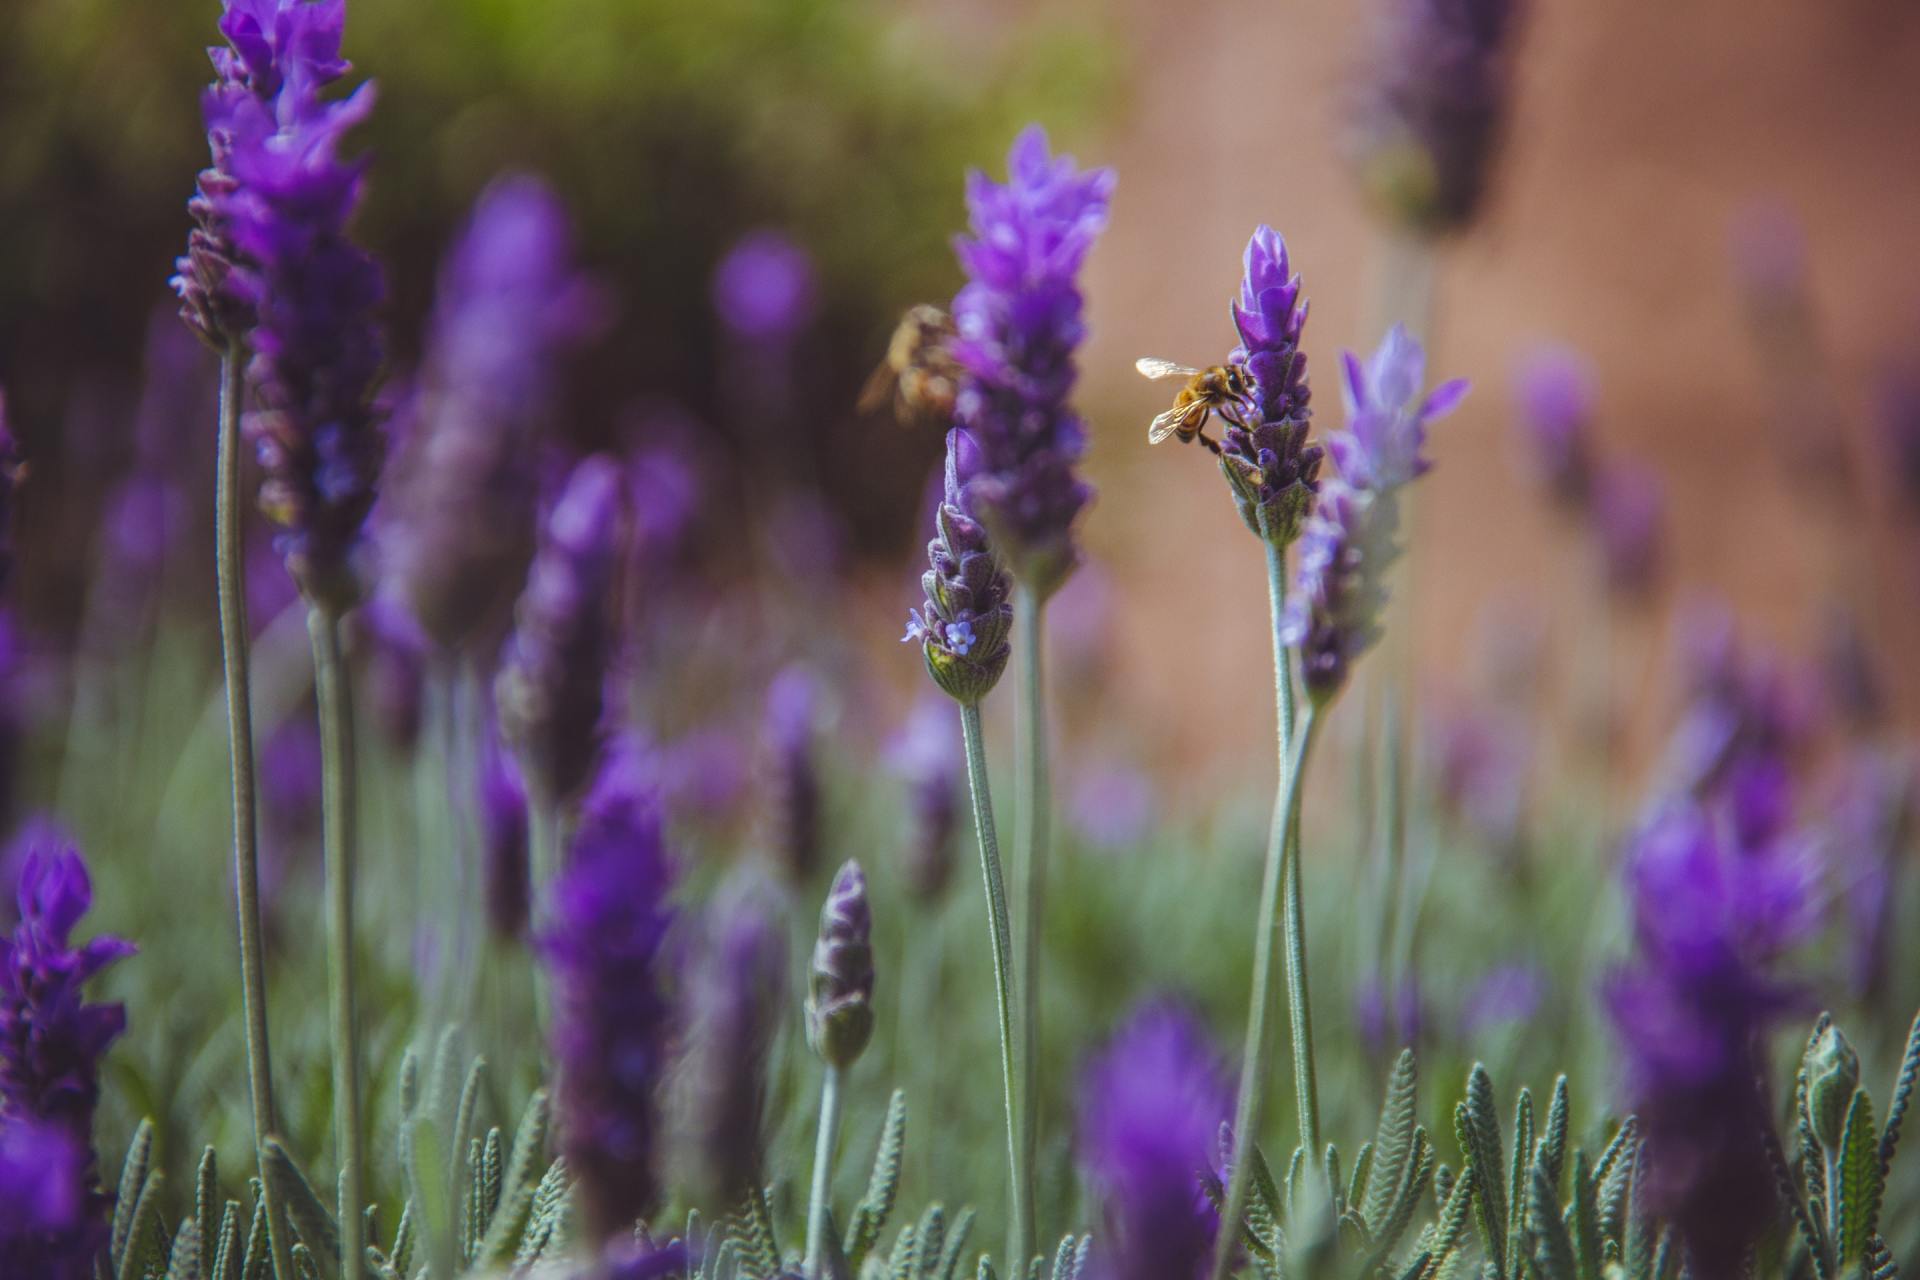 A bee is sitting on a purple flower in a field.